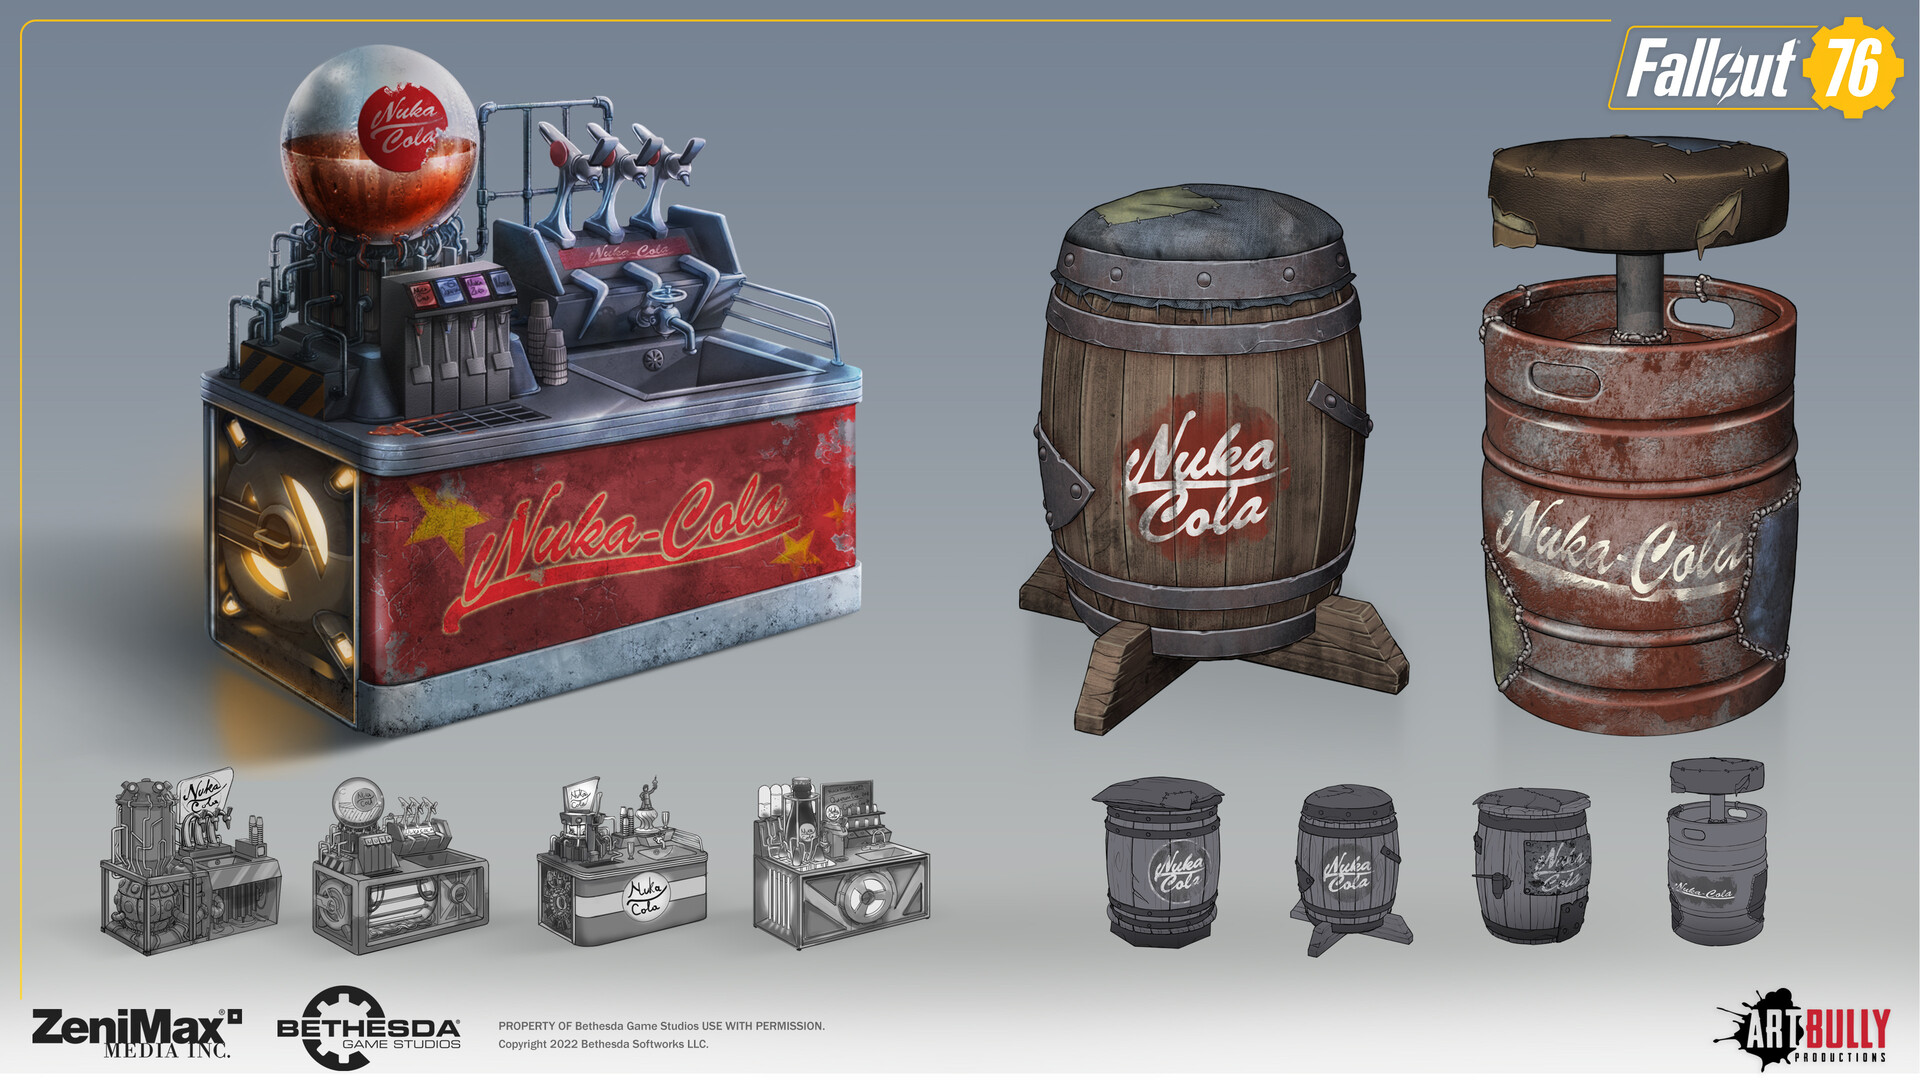 Fallout 4 nuka world завод по розливу напитков фото 52